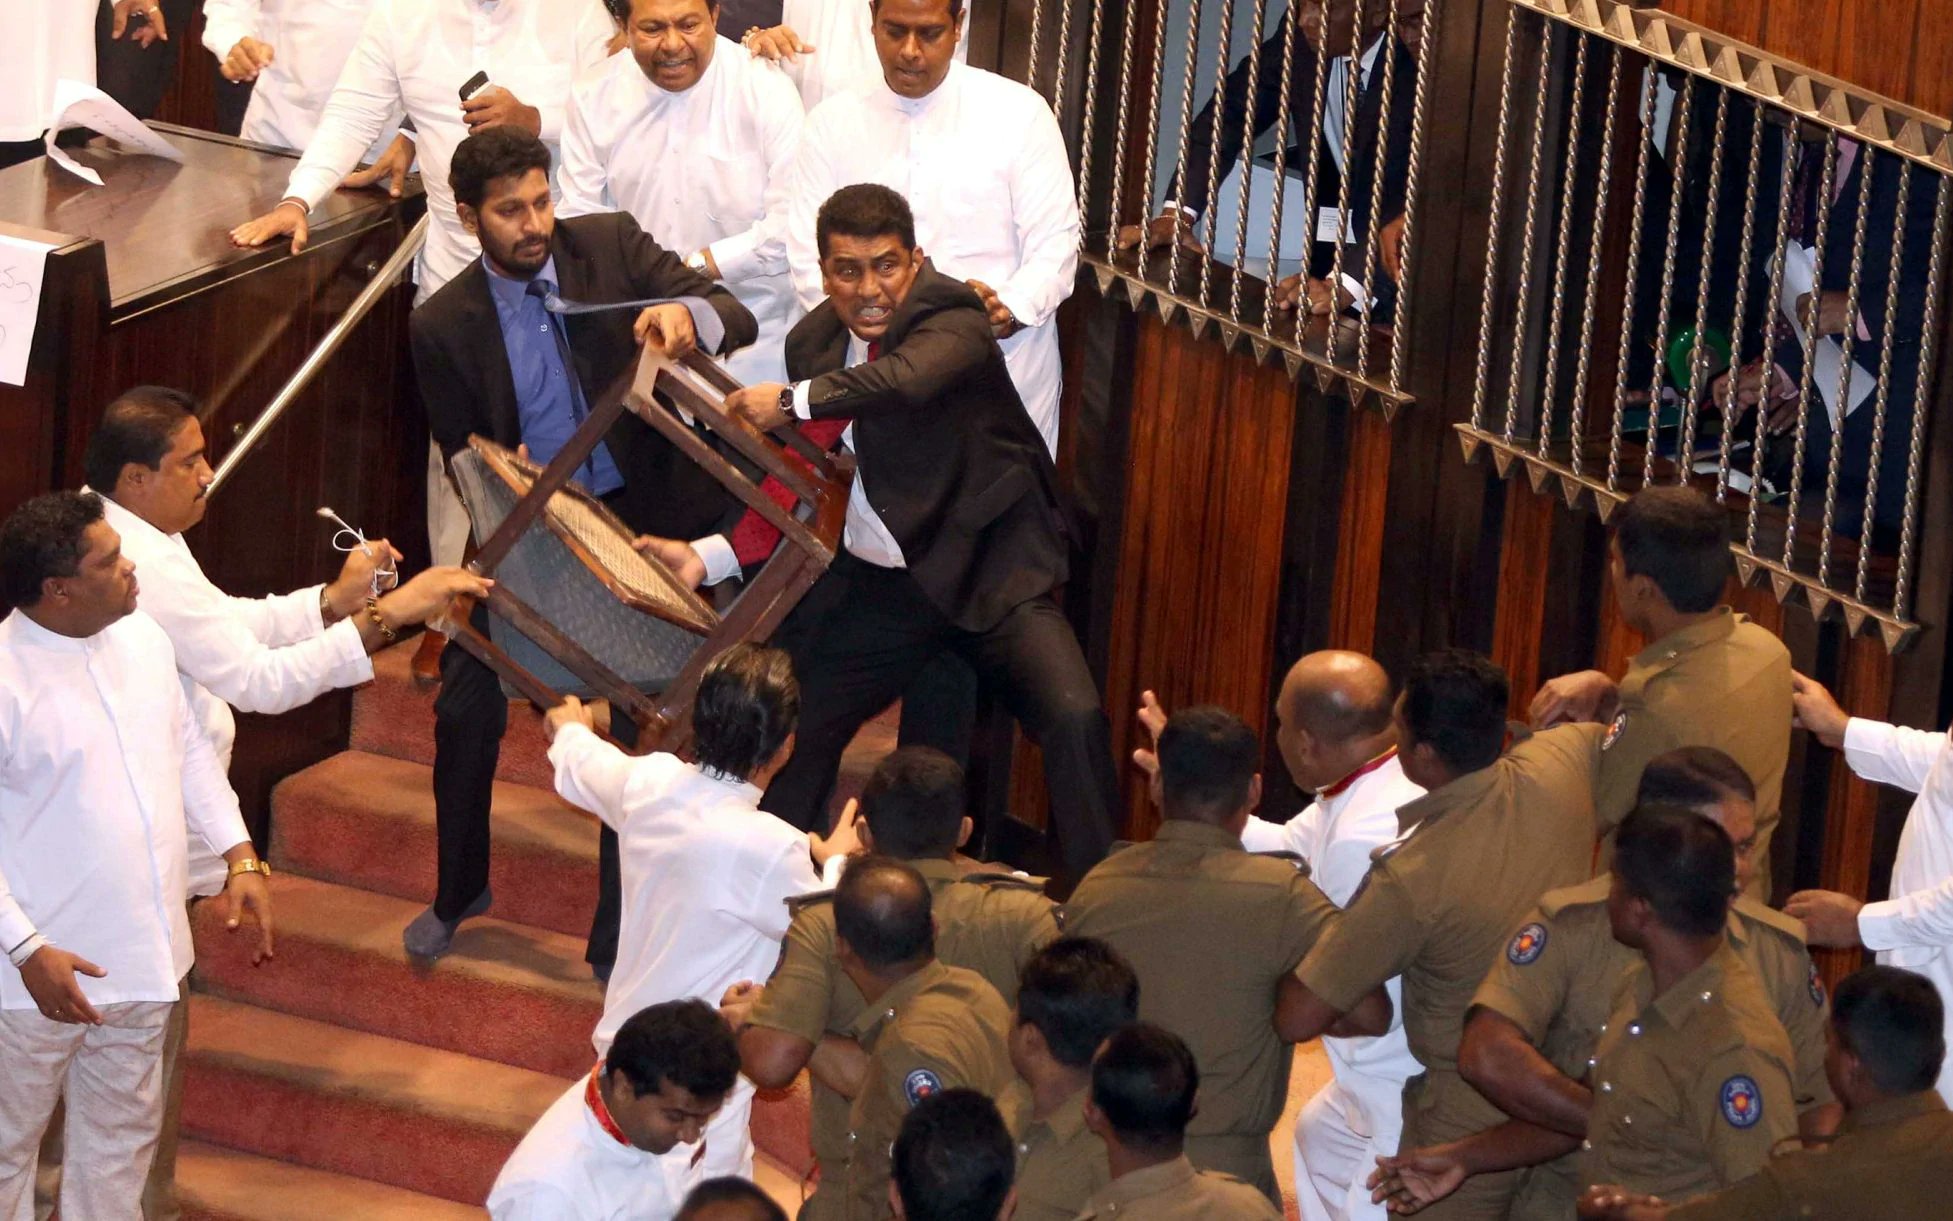 SriLanka Economic Crisis : भारत ‘पड़ोसी प्रथम’ की नीति के तहत श्रीलंका की मदद को तैयार- विदेश मंत्रालय